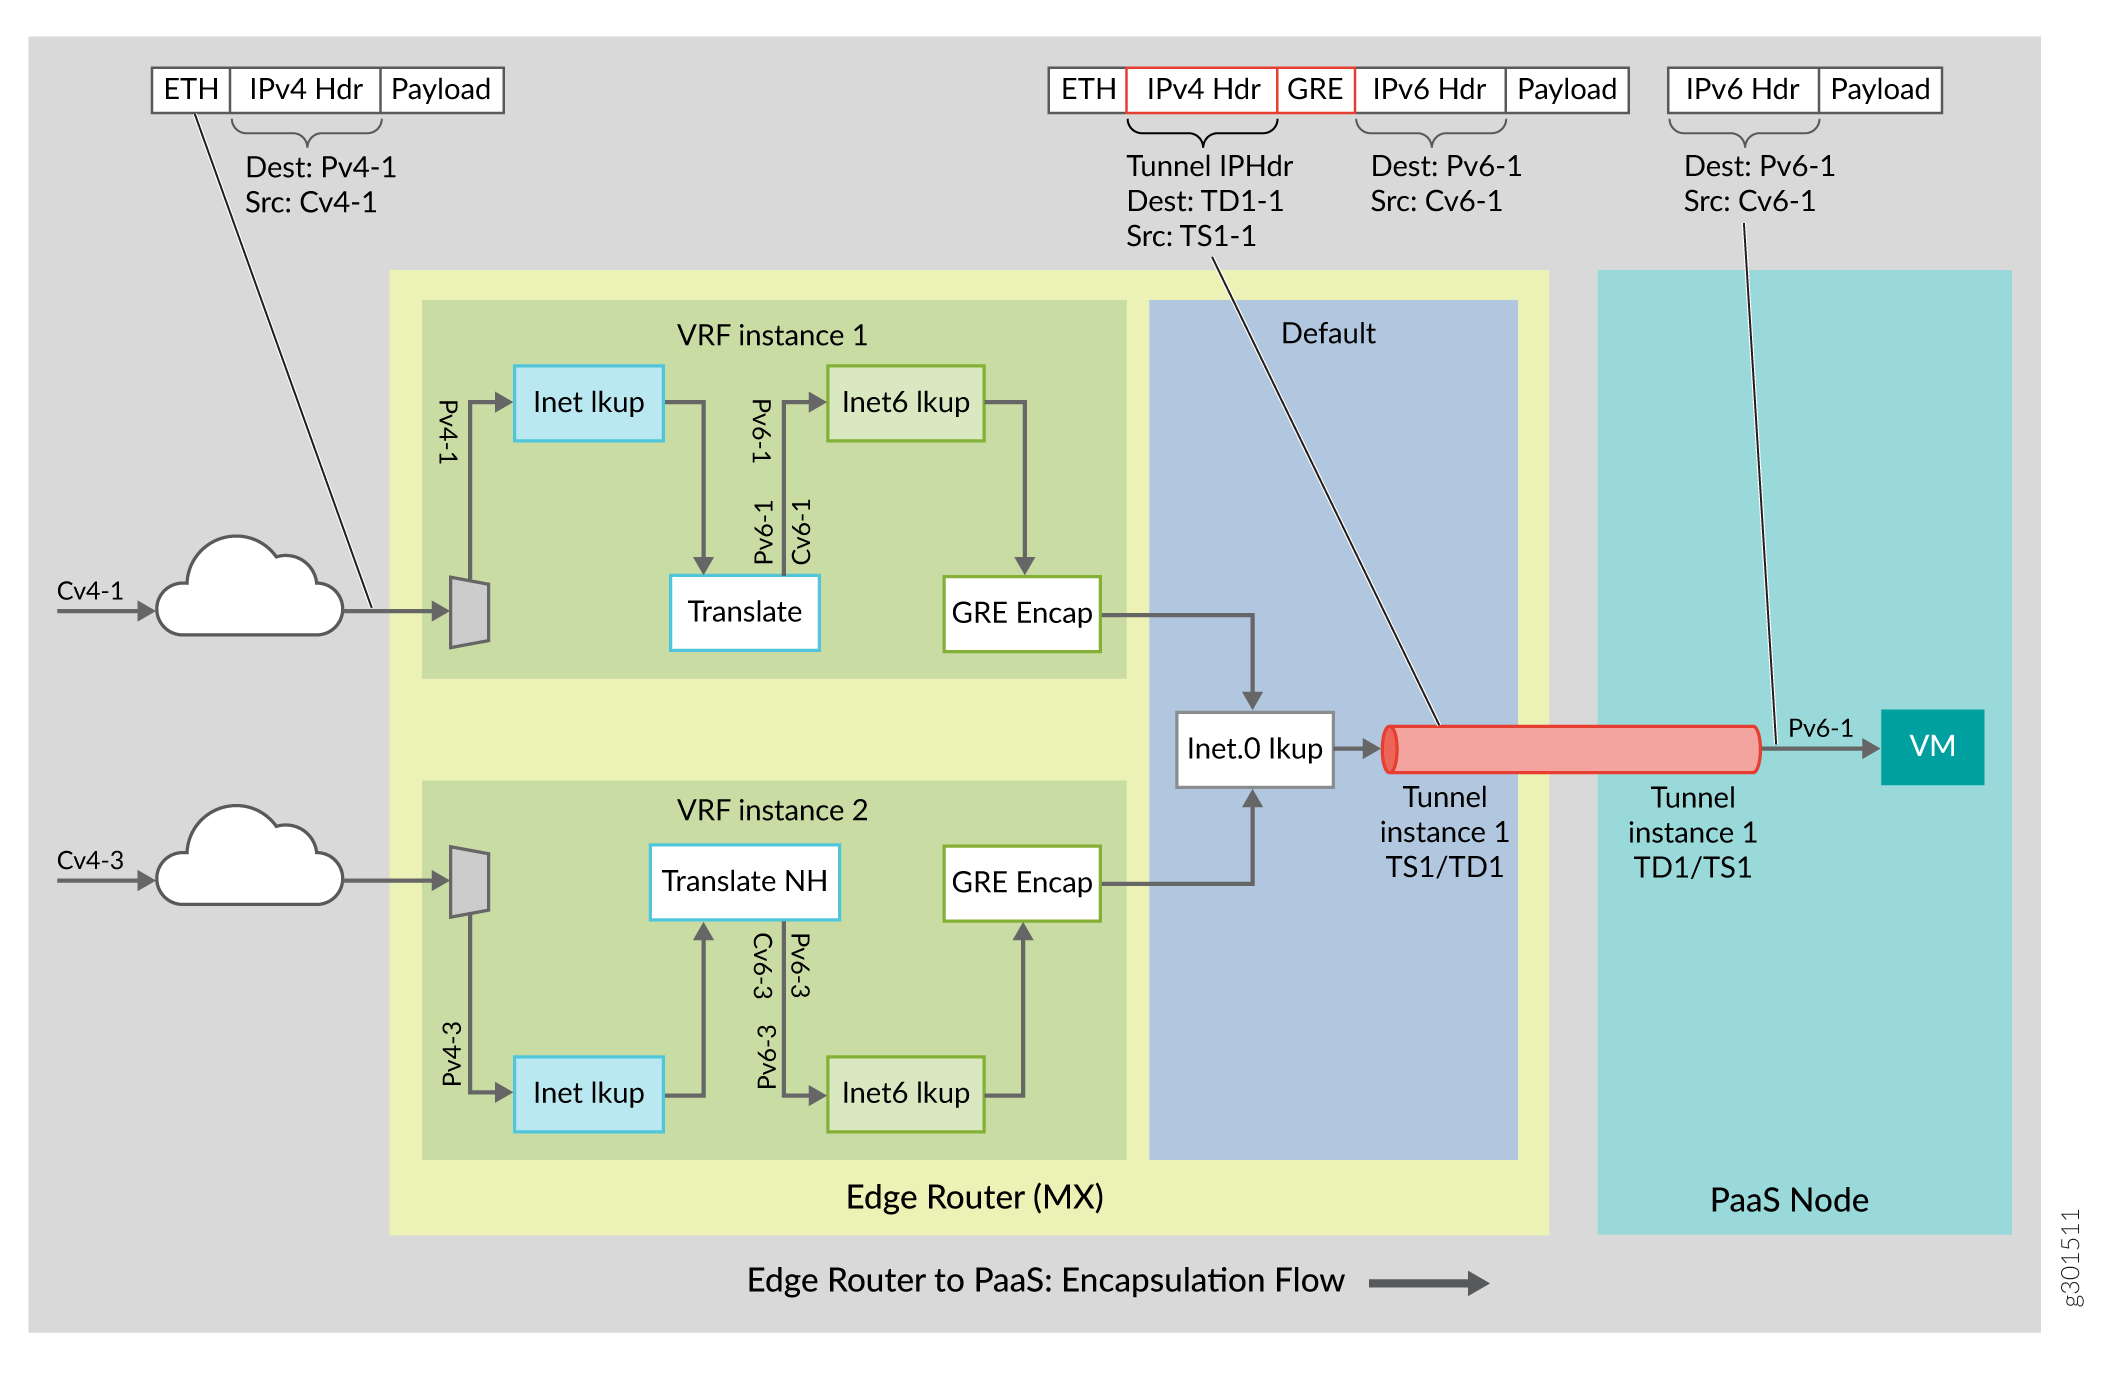 Encapsulation Flow (Edge Router to PaaS Server)